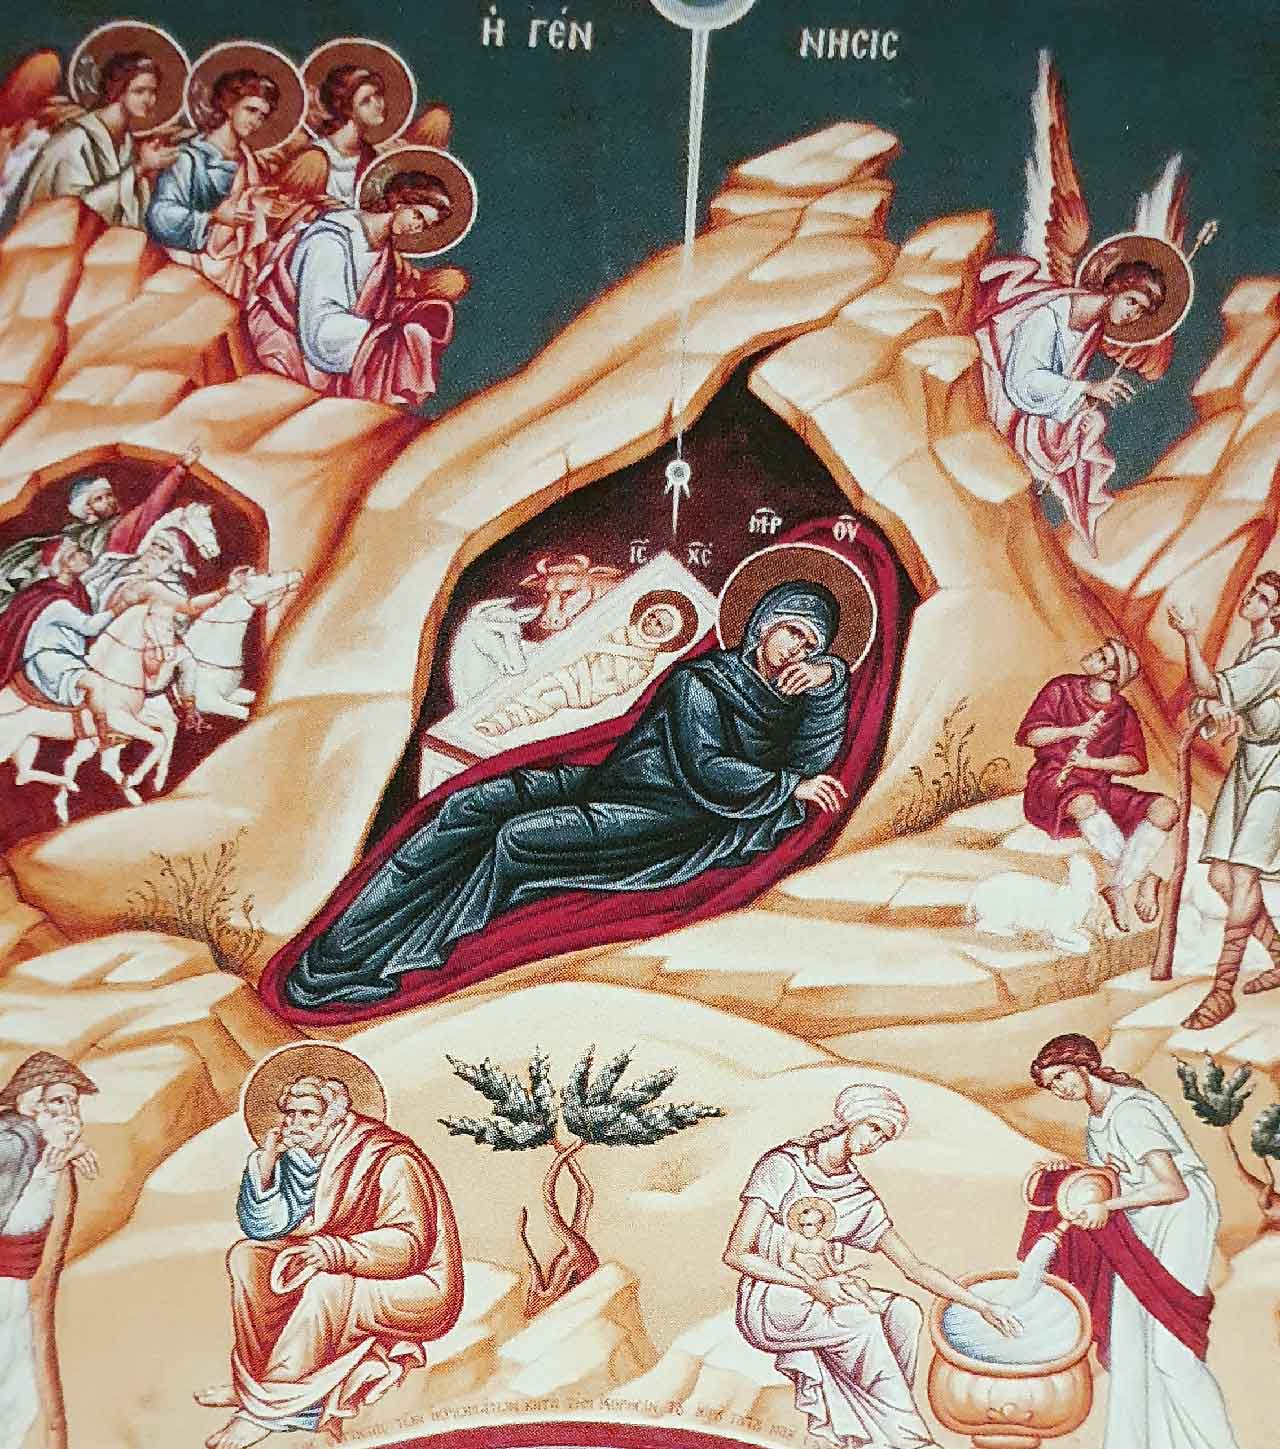 Η απεικόνιση της Γέννησης του Χριστού - Αγιογραφία στον Ιερό Ναό του Αγίου Ανδρέου Ντύσσελντορφ - Από το βιβλίο «Εικόνων Μυσταγωγία» του πατρός Ιωάννου Ψαράκη.